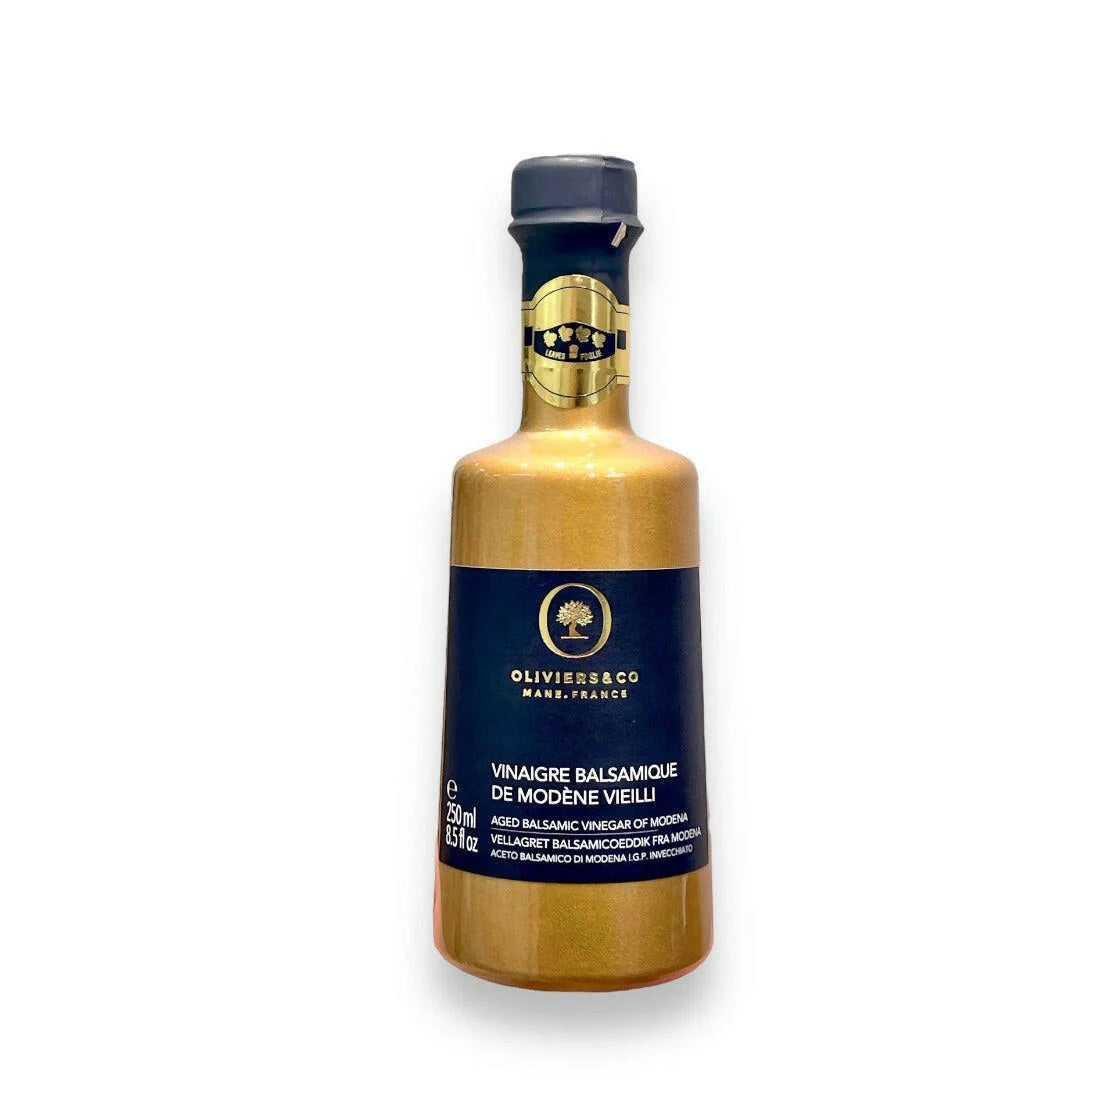 Flasche Balsamico-Essig aus Modena von Oliviers & Co mit goldener Etikette. Die Flasche steht auf einem weißen Hintergrund, wobei die edle Verpackung und das hochwertige Design des Produkts hervorgehoben werden. Der Balsamico ist für seinen intensiven Geschmack und seine erstklassige Qualität bekannt.